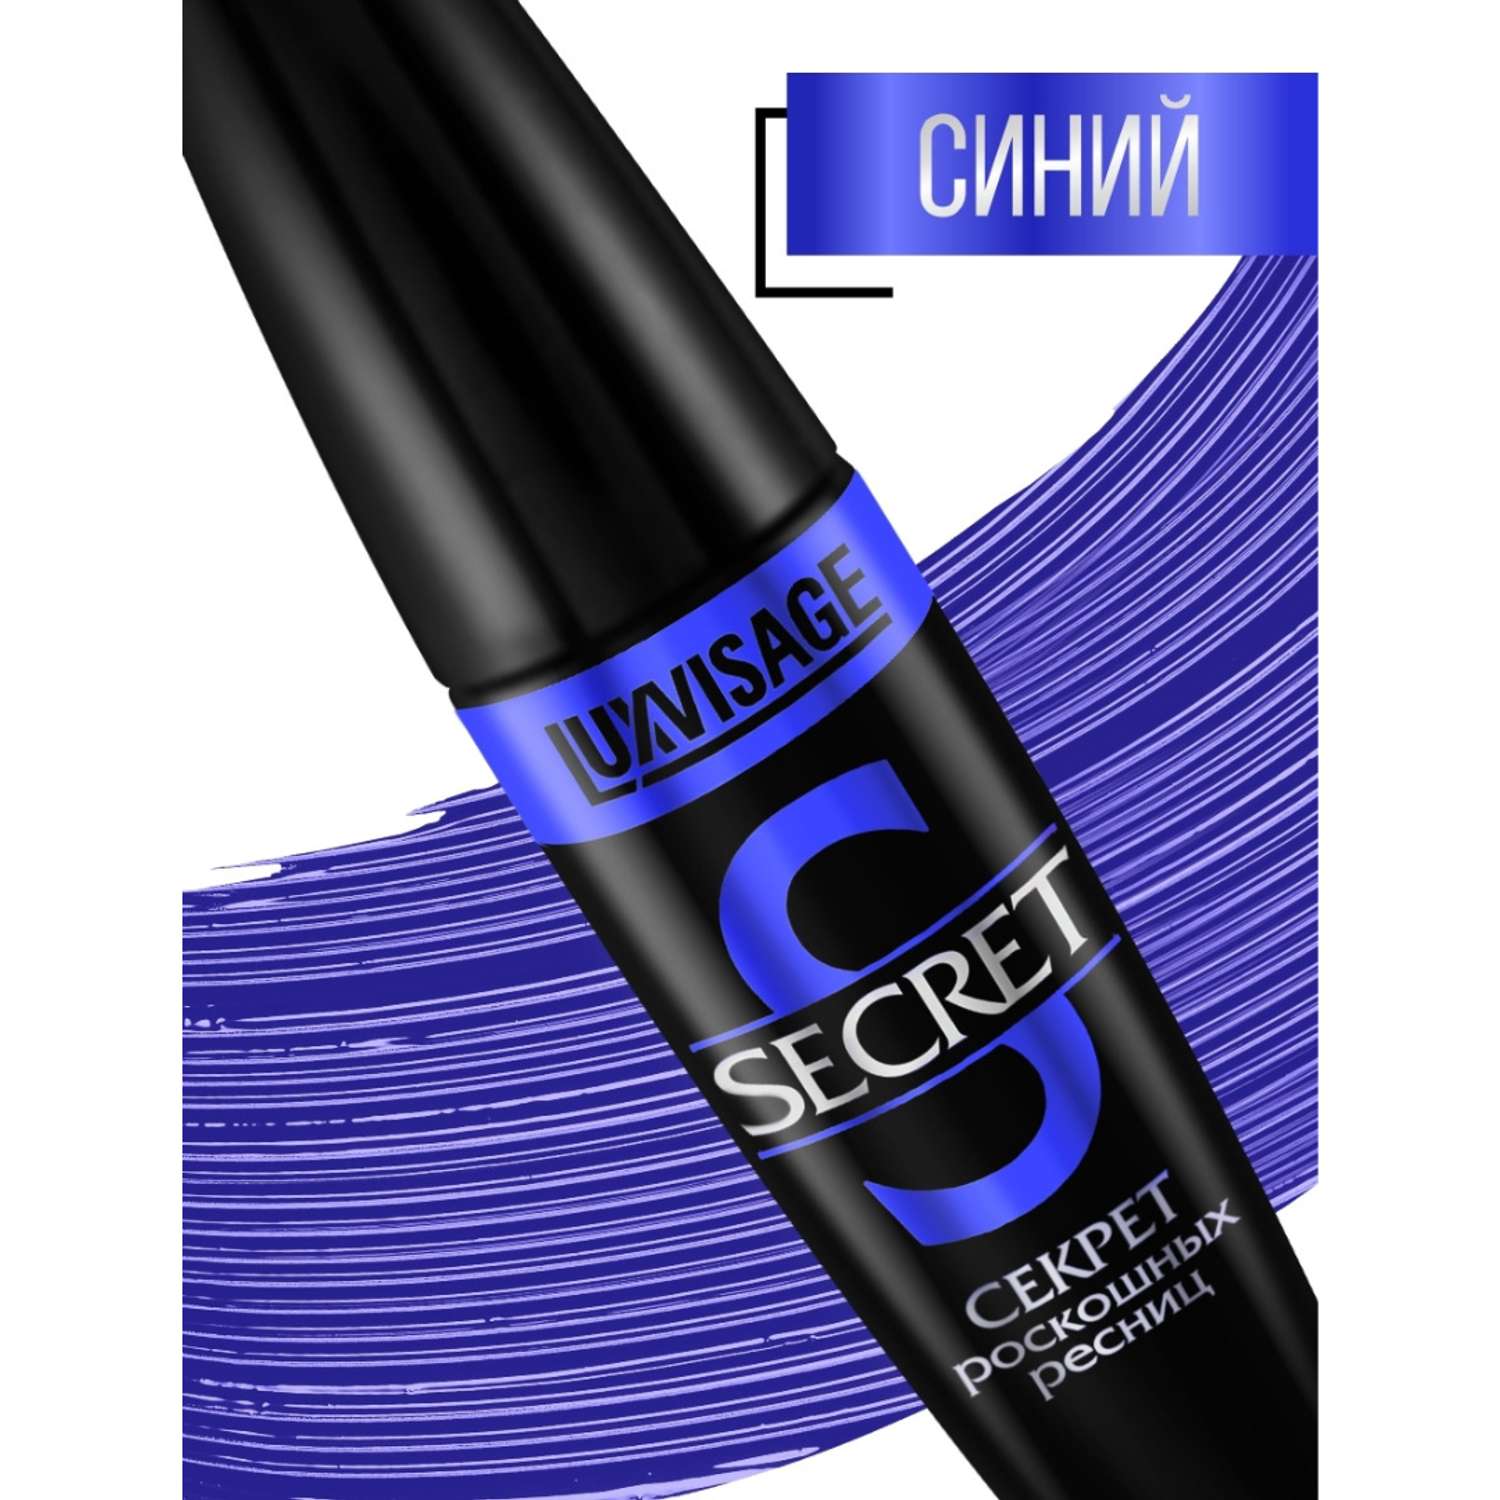 Тушь для ресниц Luxvisage SECRET Секрет роскошных ресниц цветная синяя 12 г - фото 3